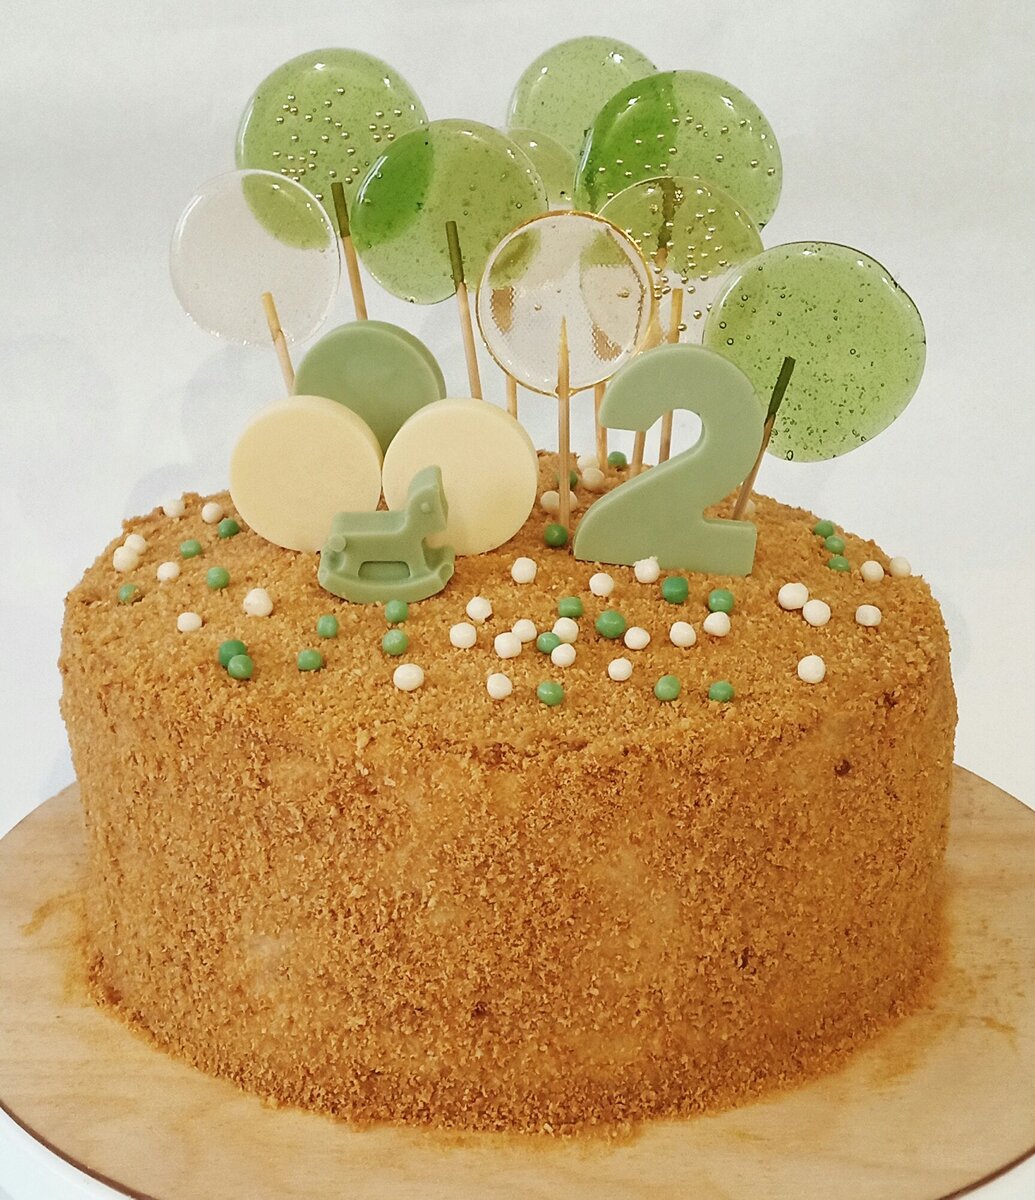 Фигурки для торта: творчество в украшении десертов